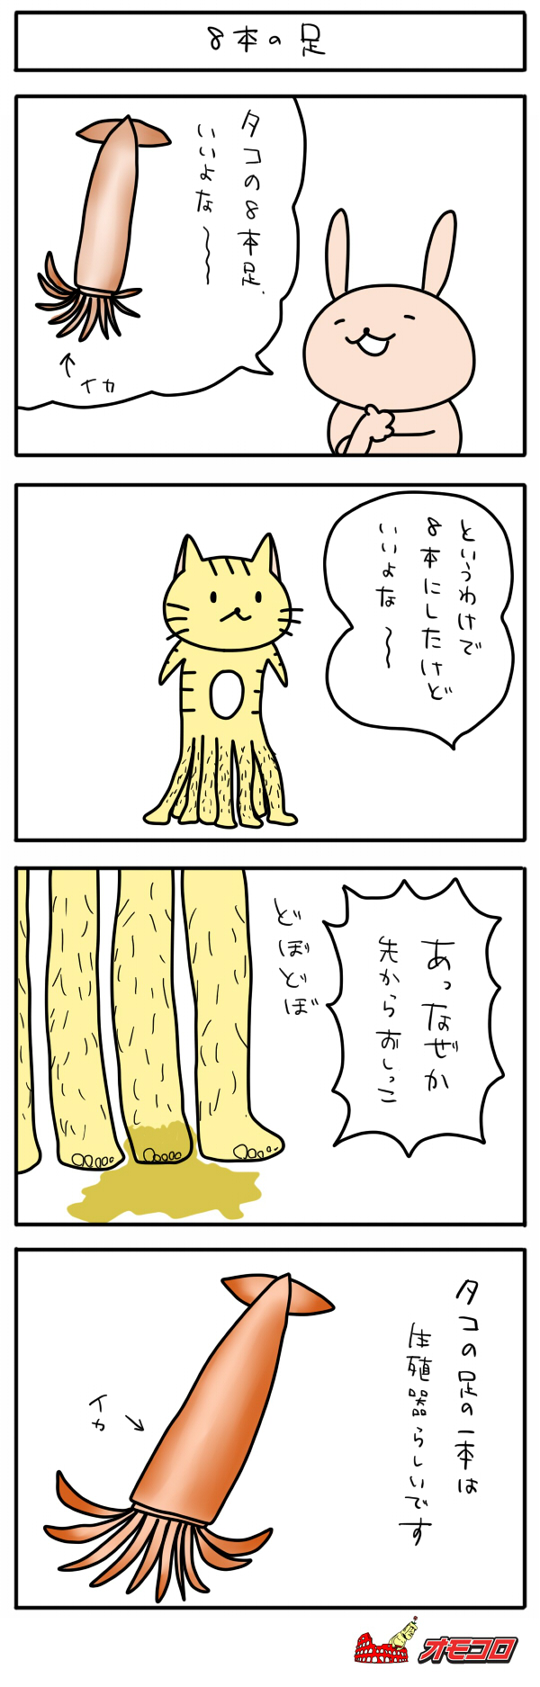 【4コマ漫画】8本の足